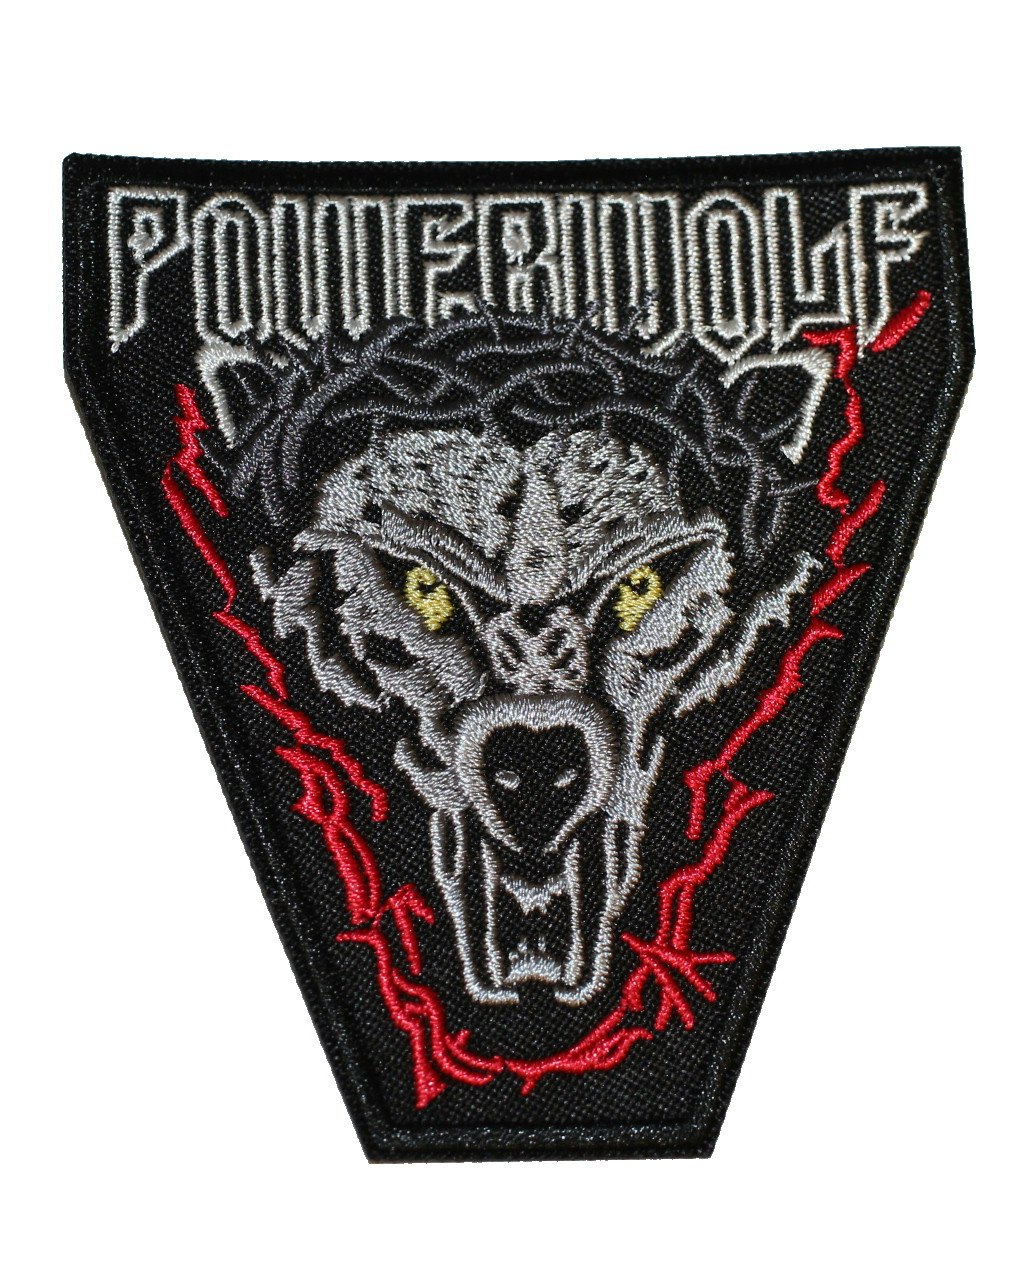 Powerwolf logo patch